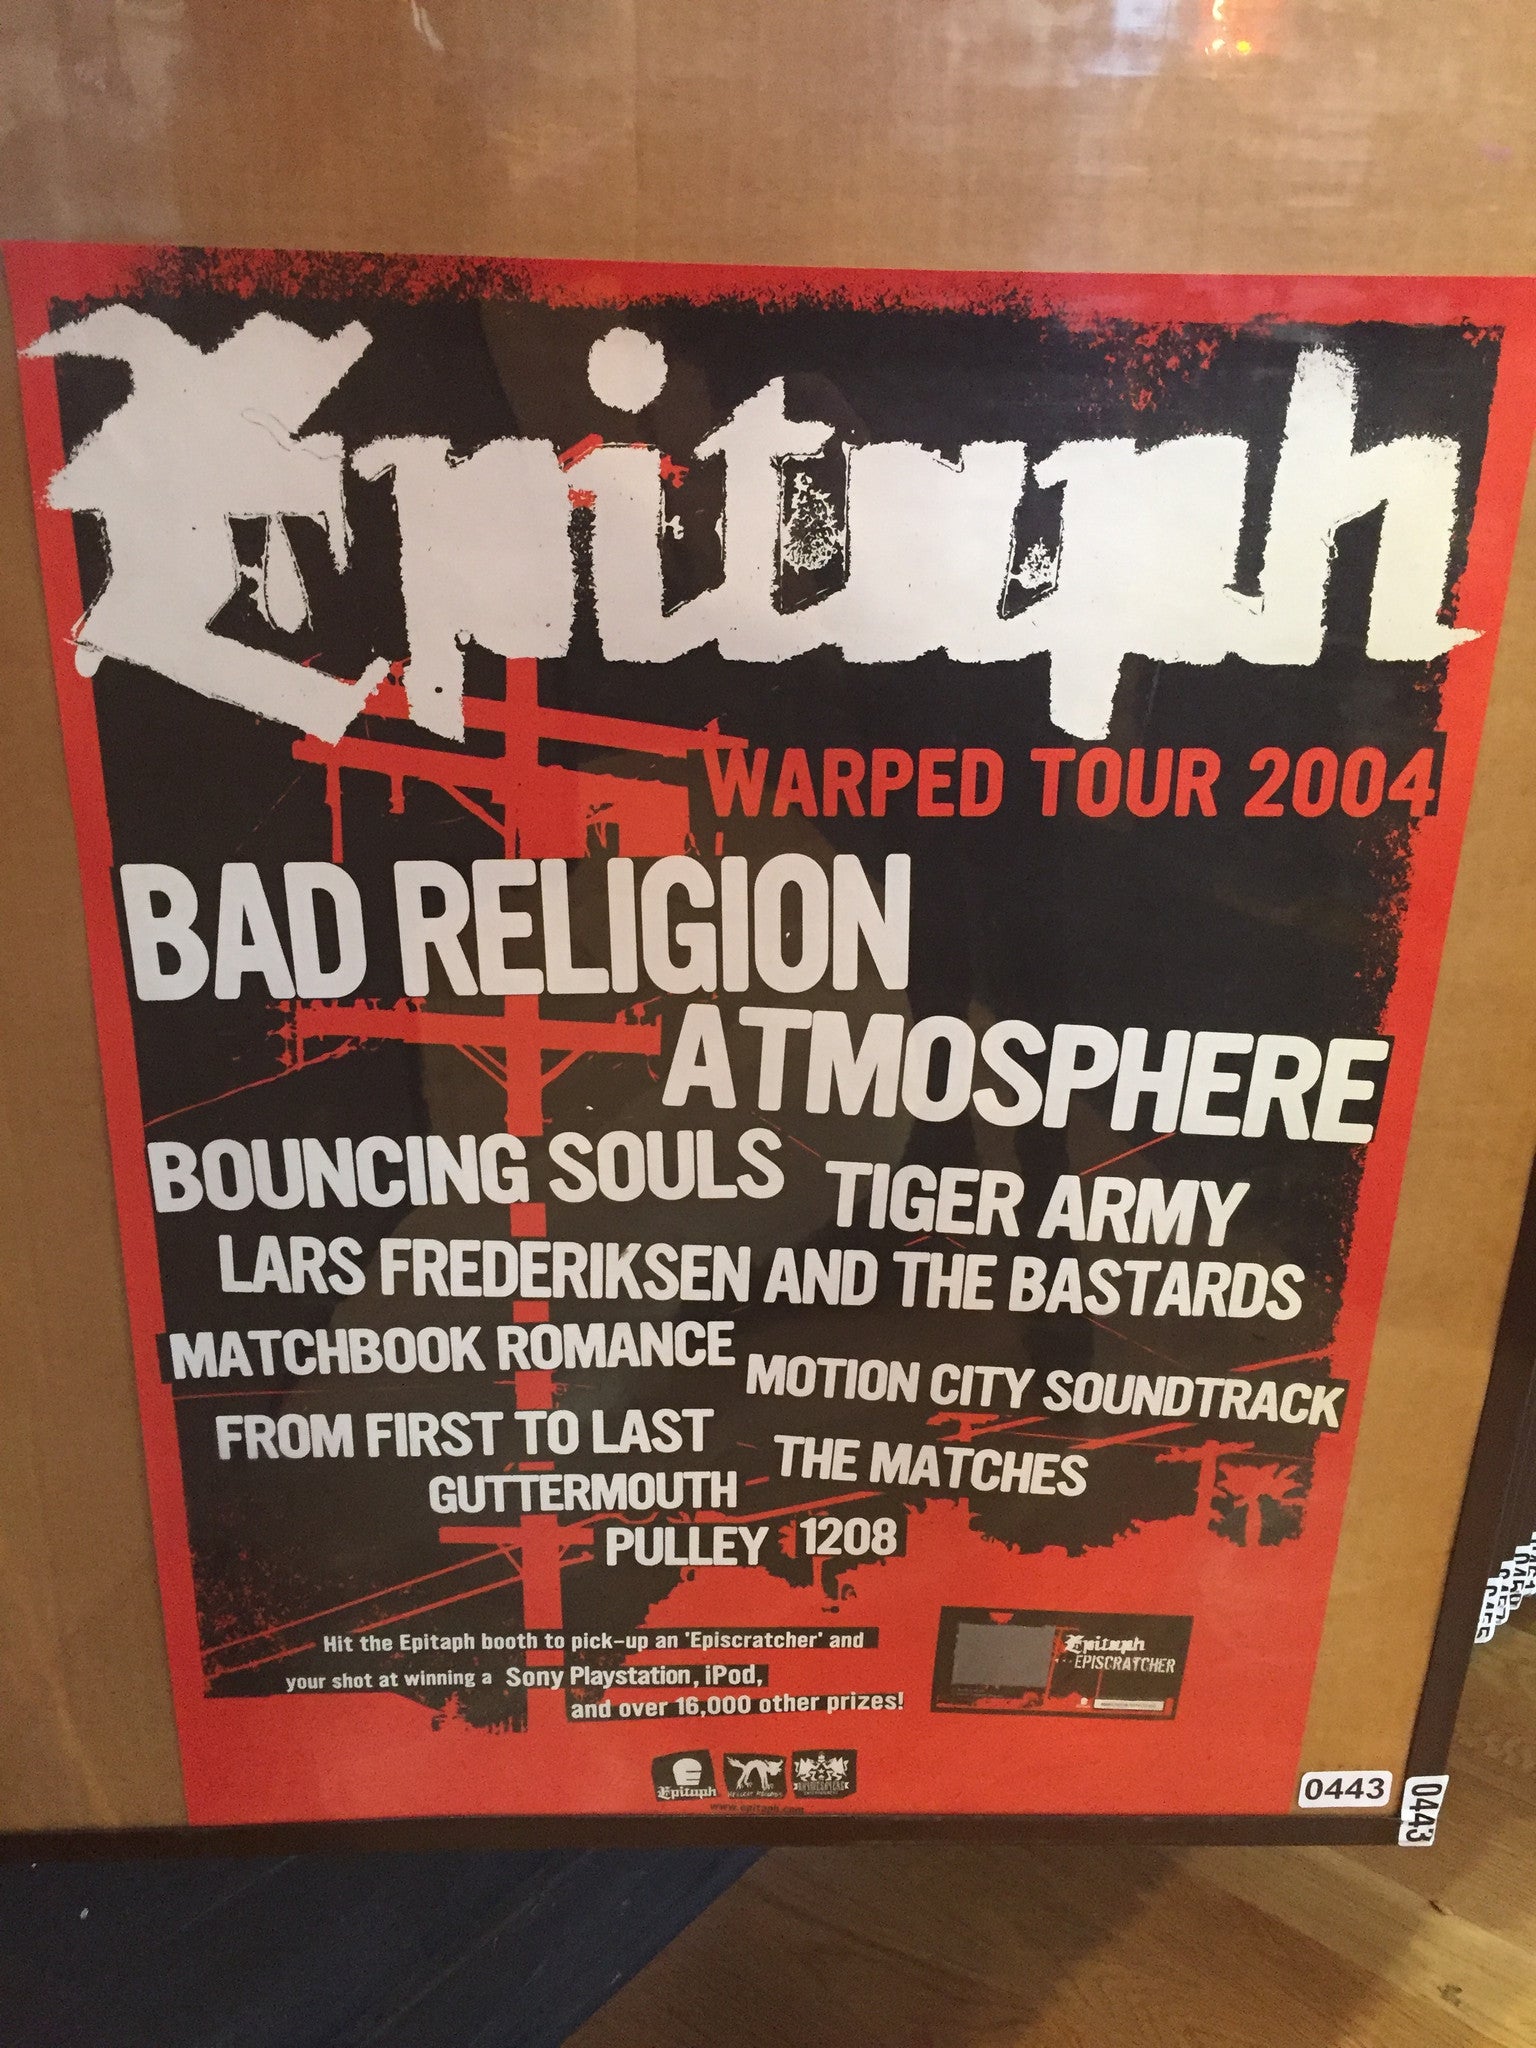 Vans Warped Tour 2004 - 18x24 Promo Poster - p0443